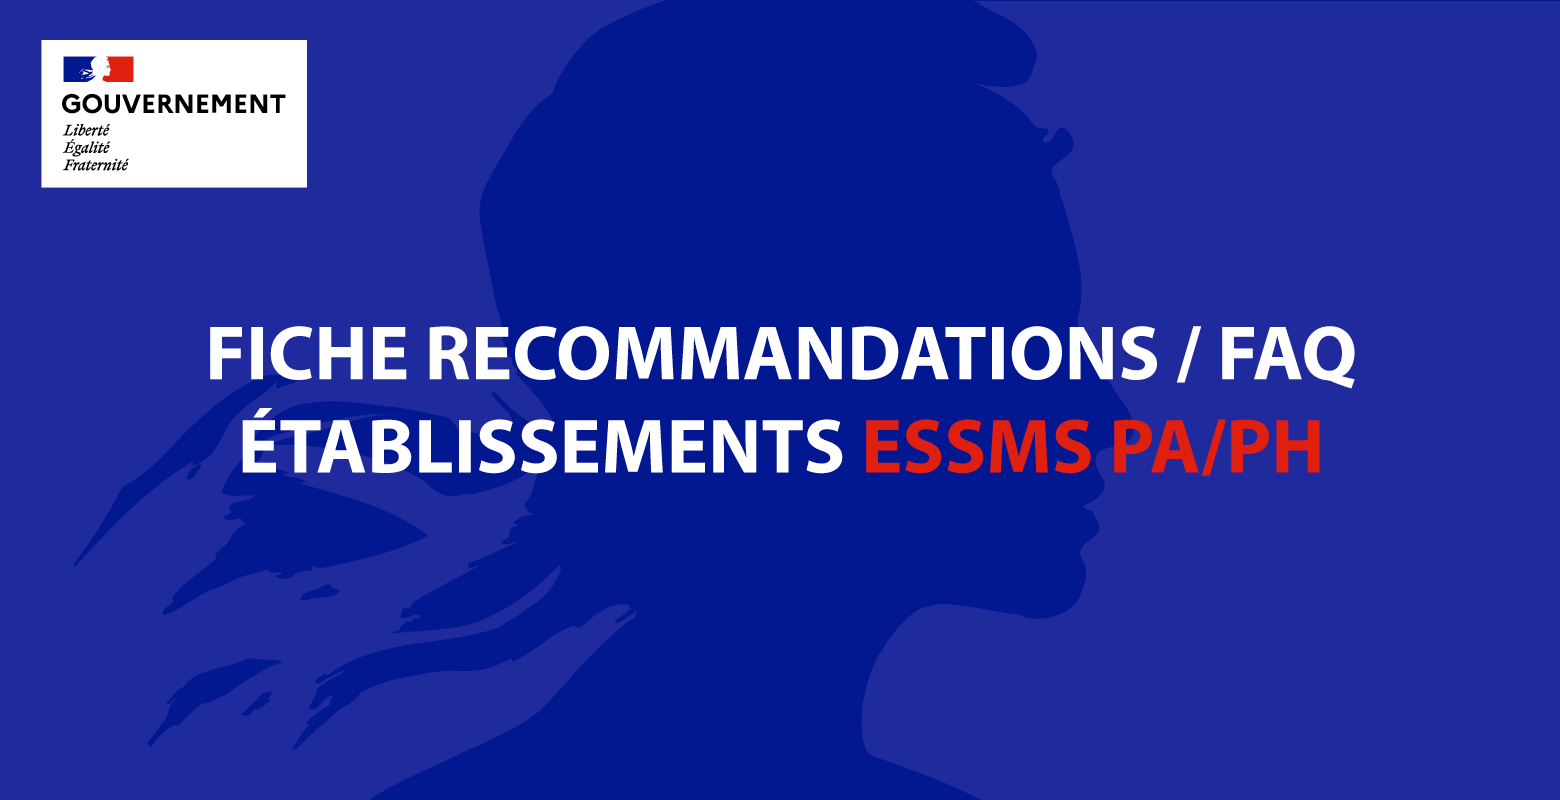 Fiche de recommandations pour les établissements ESSMS PA/PH (Gouvernement)